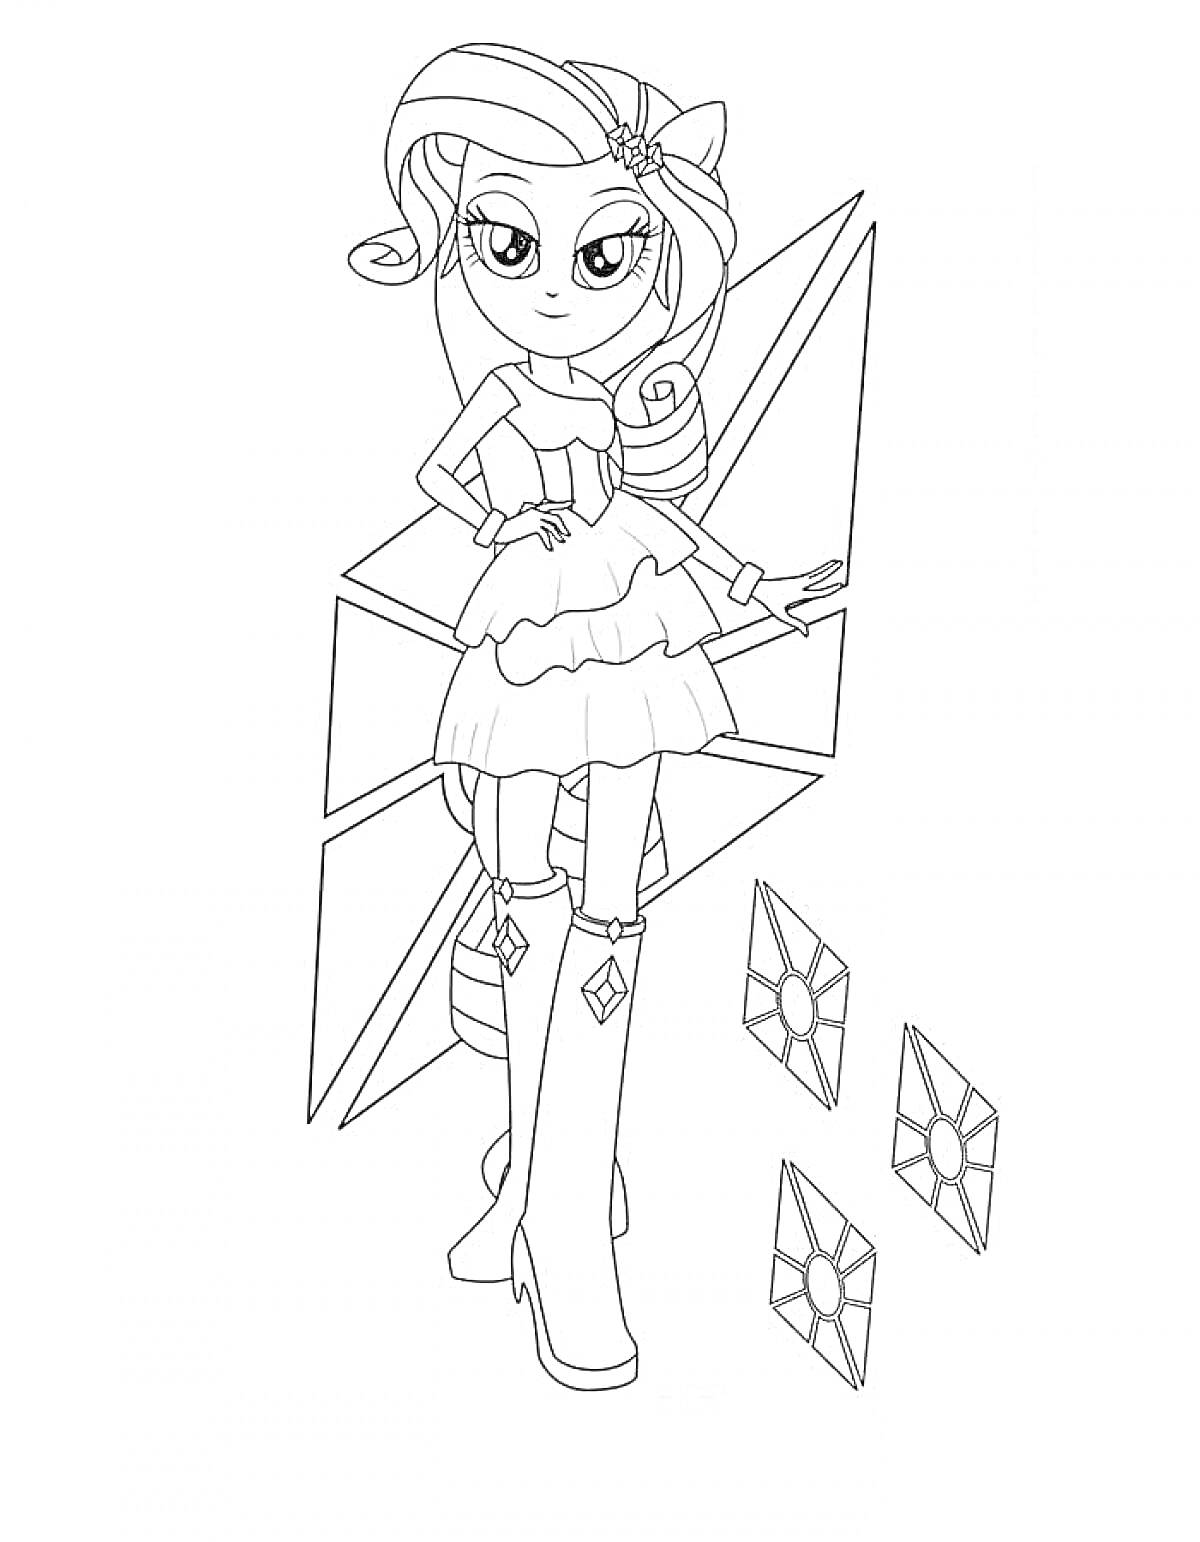 Раскраска Девушка Эквестрии с волнистыми волосами, в платье и сапогах на каблуке, на фоне геометрических фигур и трех алмазных кристаллов